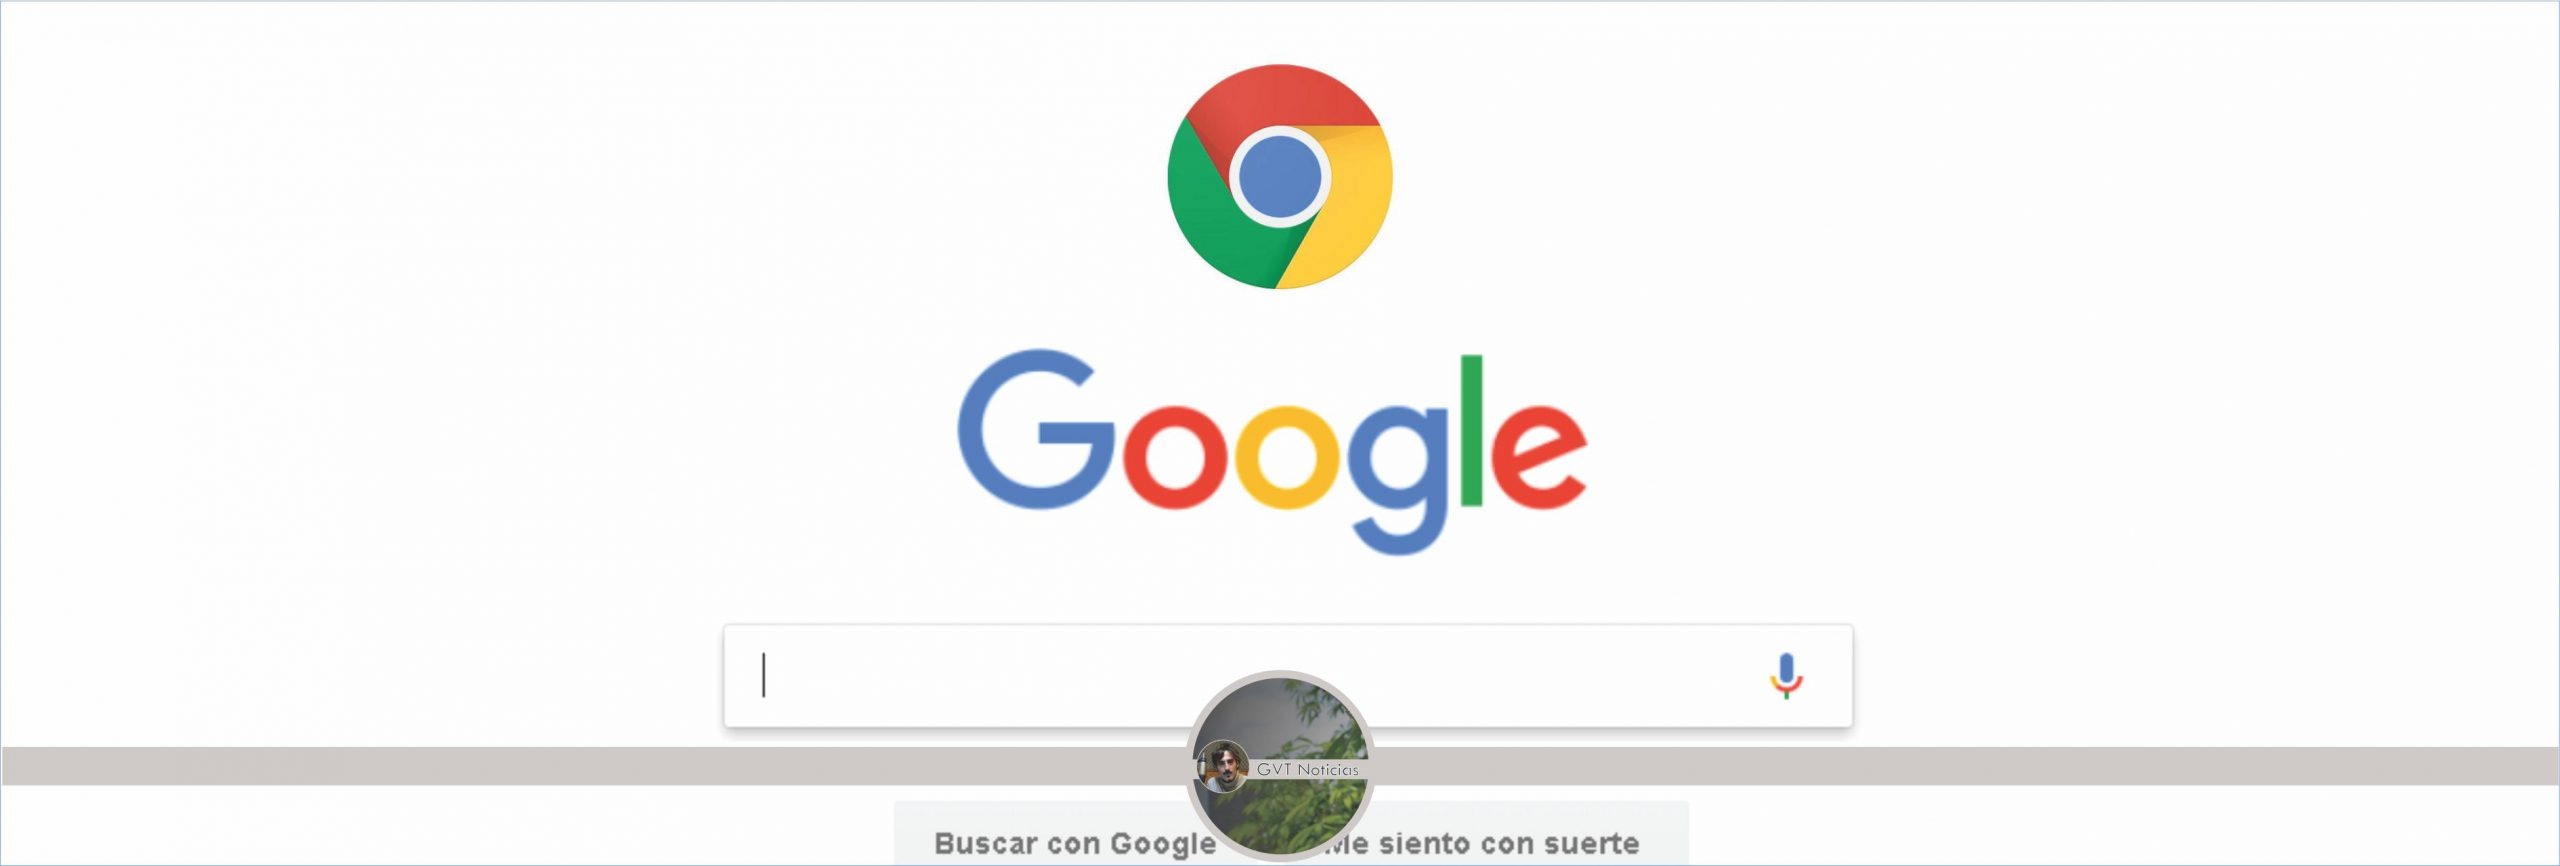 20190304 - Google Chrome